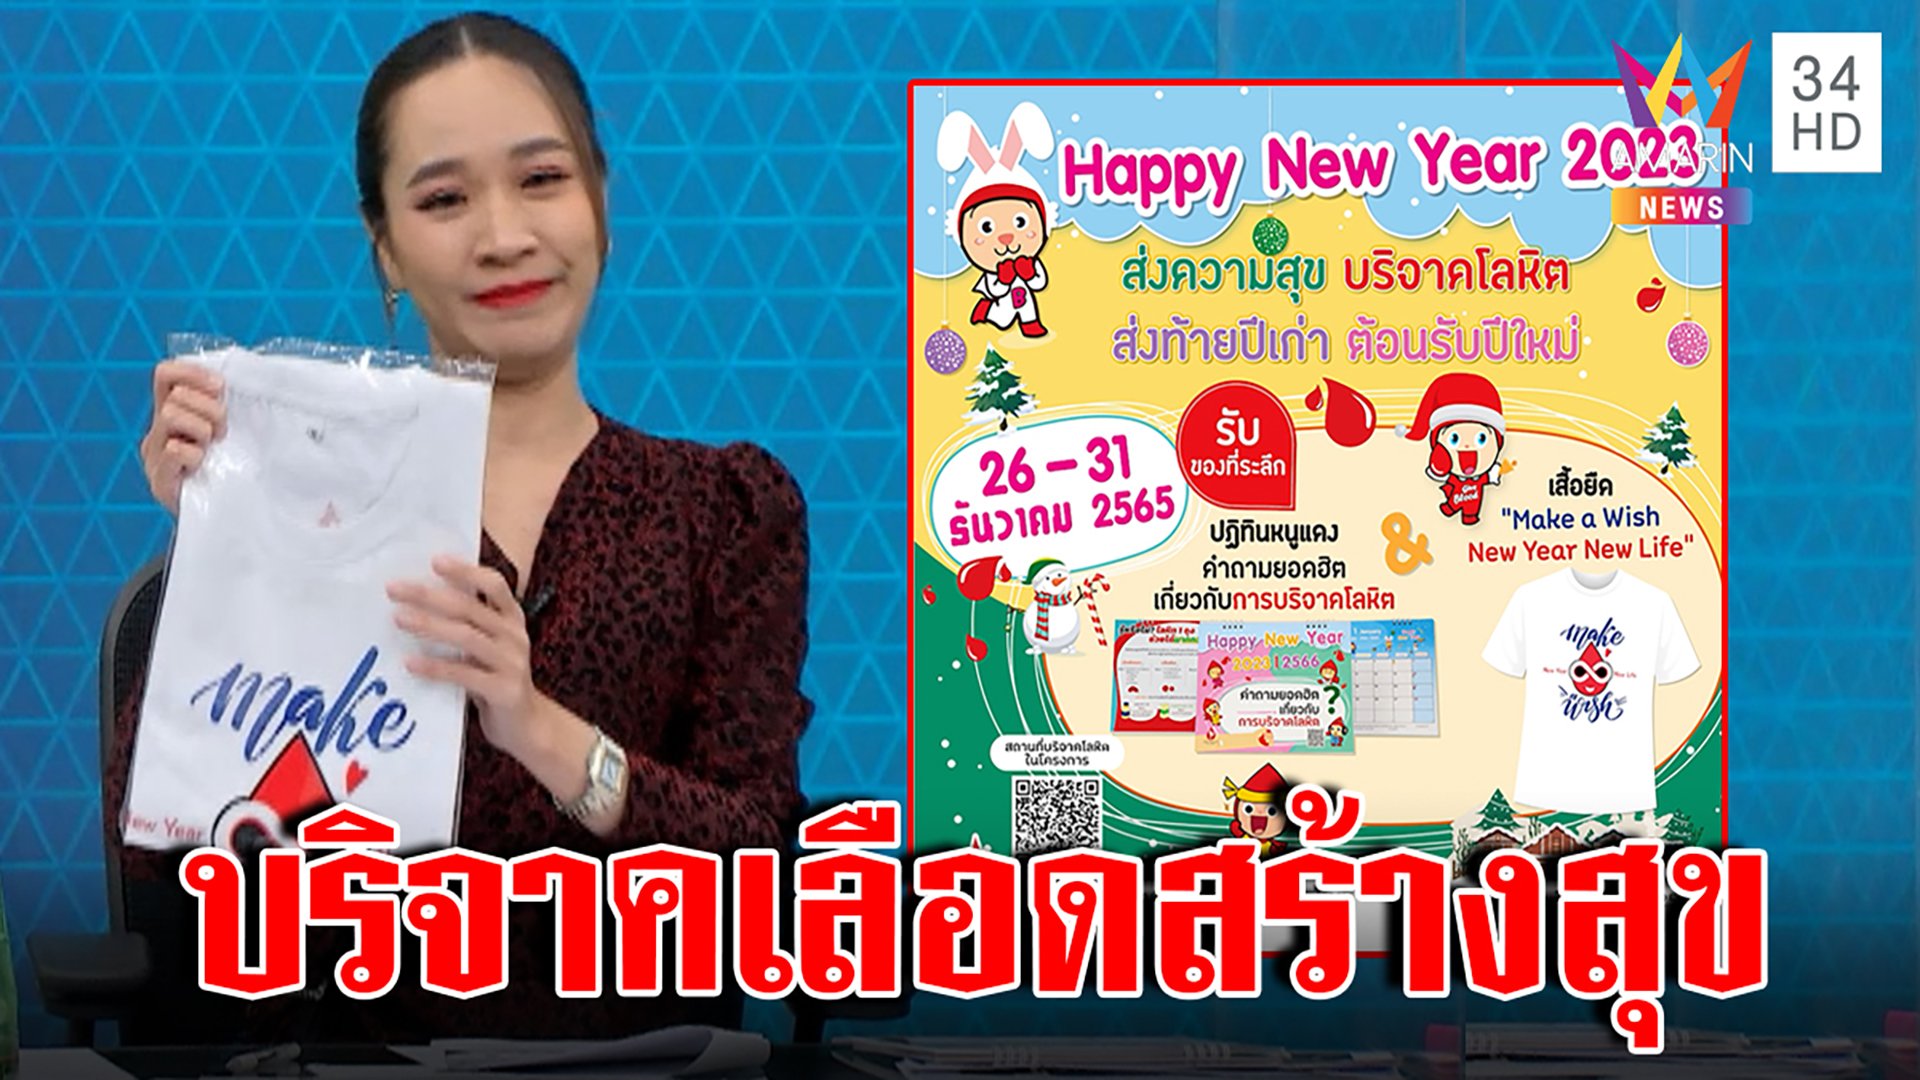 สภากาชาดฯ เปิดจุดบริจาคเลือด เชิญคนไทยทำบุญส่งสุขรับปีใหม่ | ทุบโต๊ะข่าว | 27 ธ.ค. 65 | AMARIN TVHD34